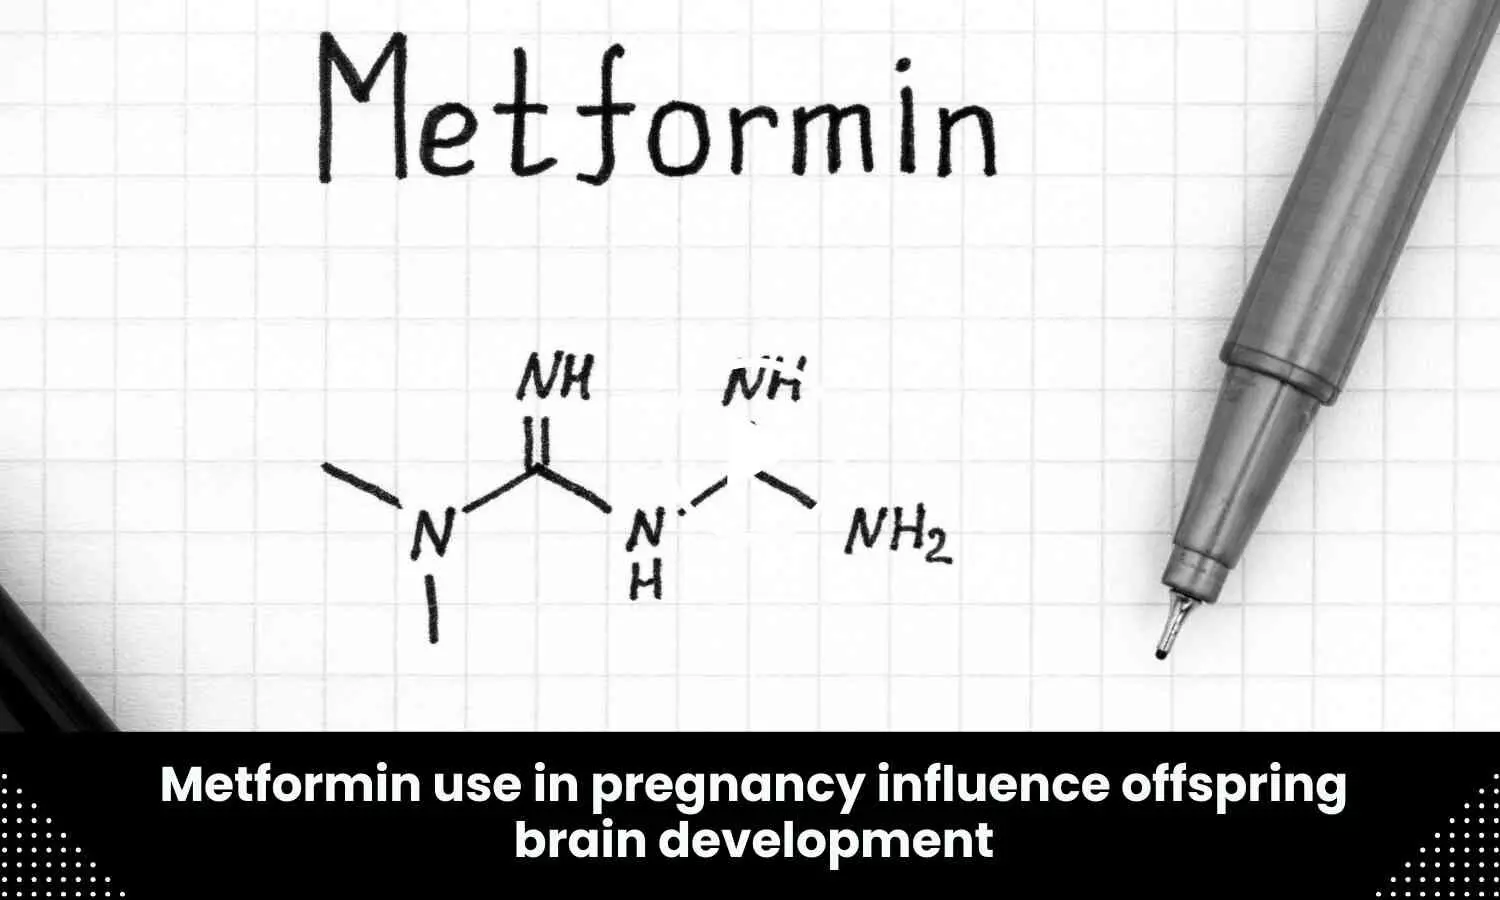 Metformin use in pregnancy influence offspring brain development: Study